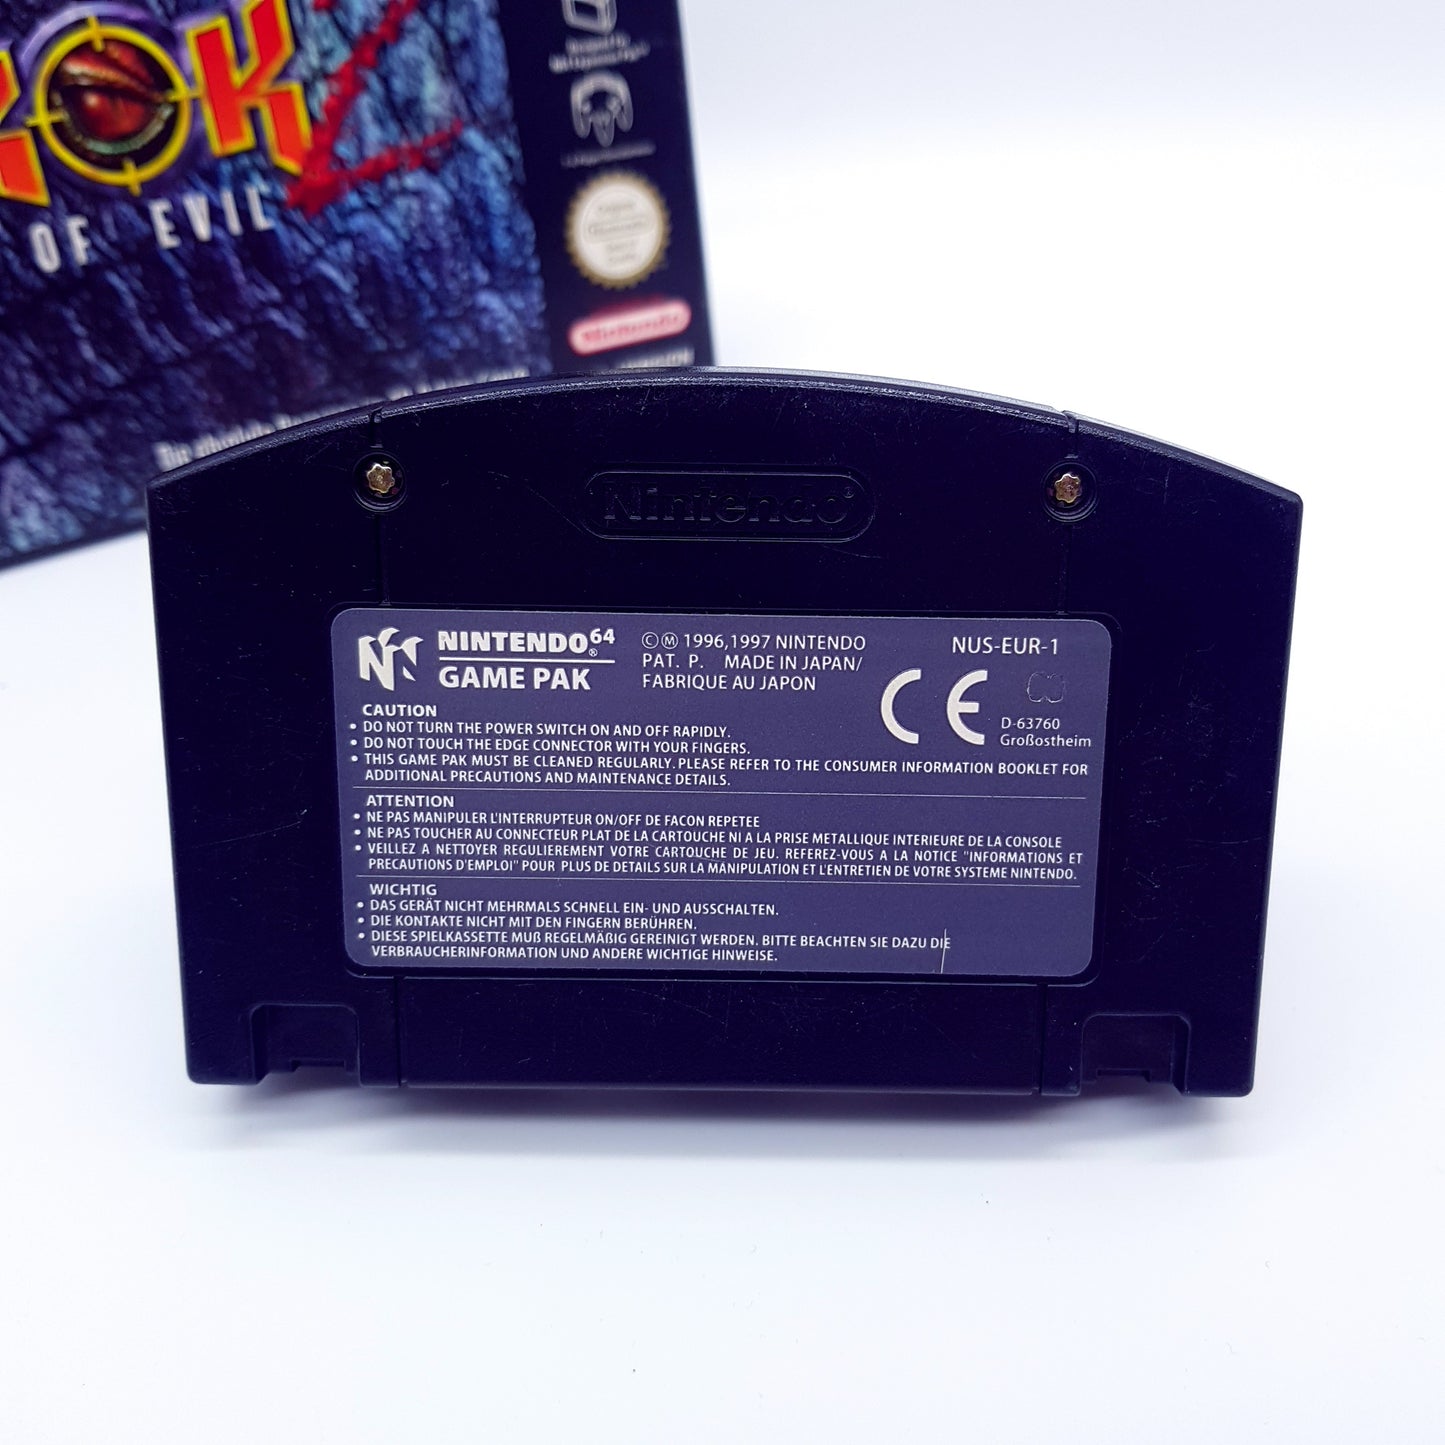 Nintendo 64 - N64 - Turok 2 - Seeds of Evil - PAL - inkl OVP & Anleitung